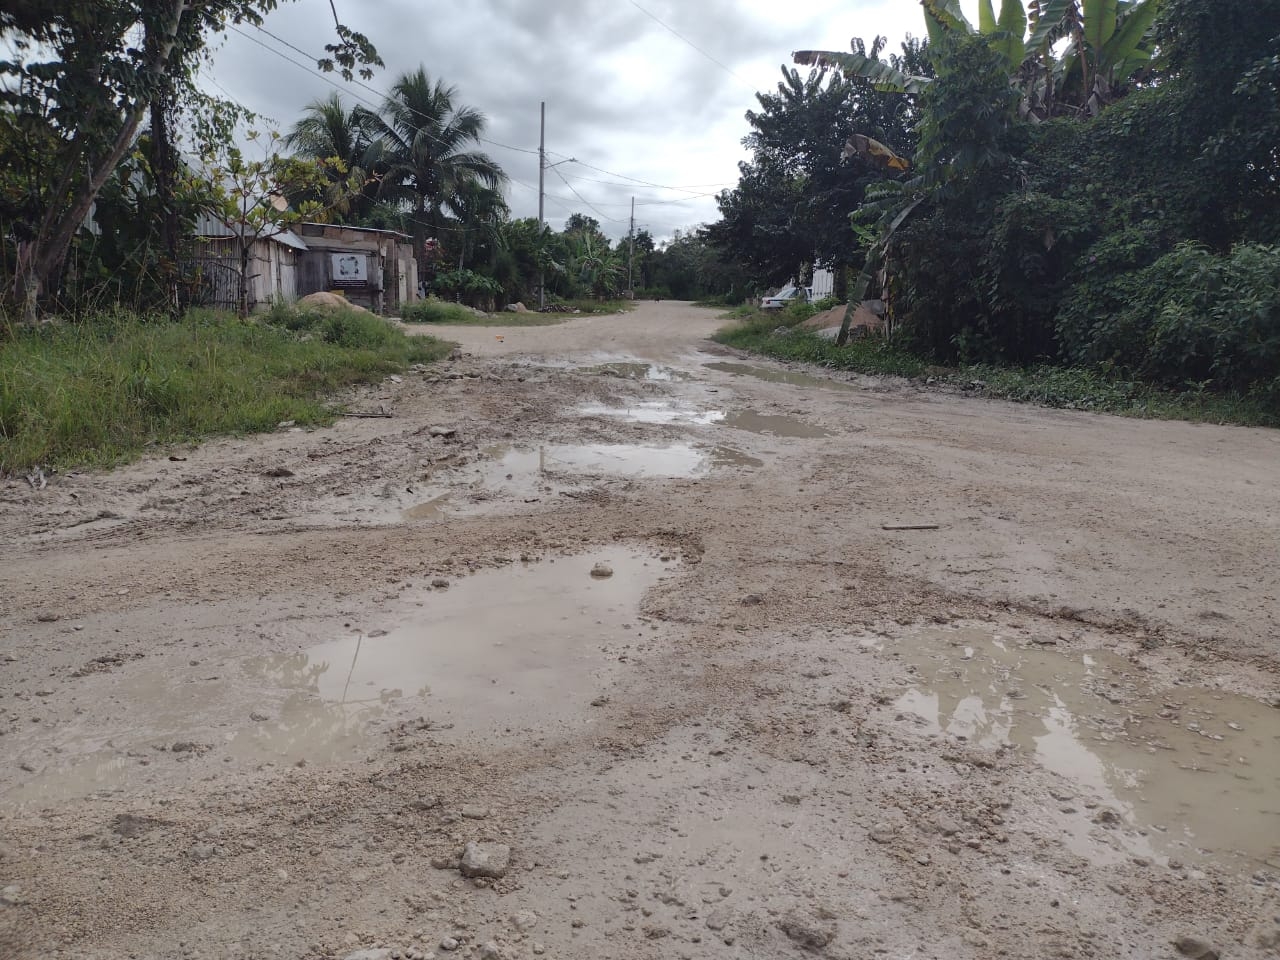 Estas condiciones perjudican severamente a las familias que viven en esta zona de Felipe Carrillo Puerto